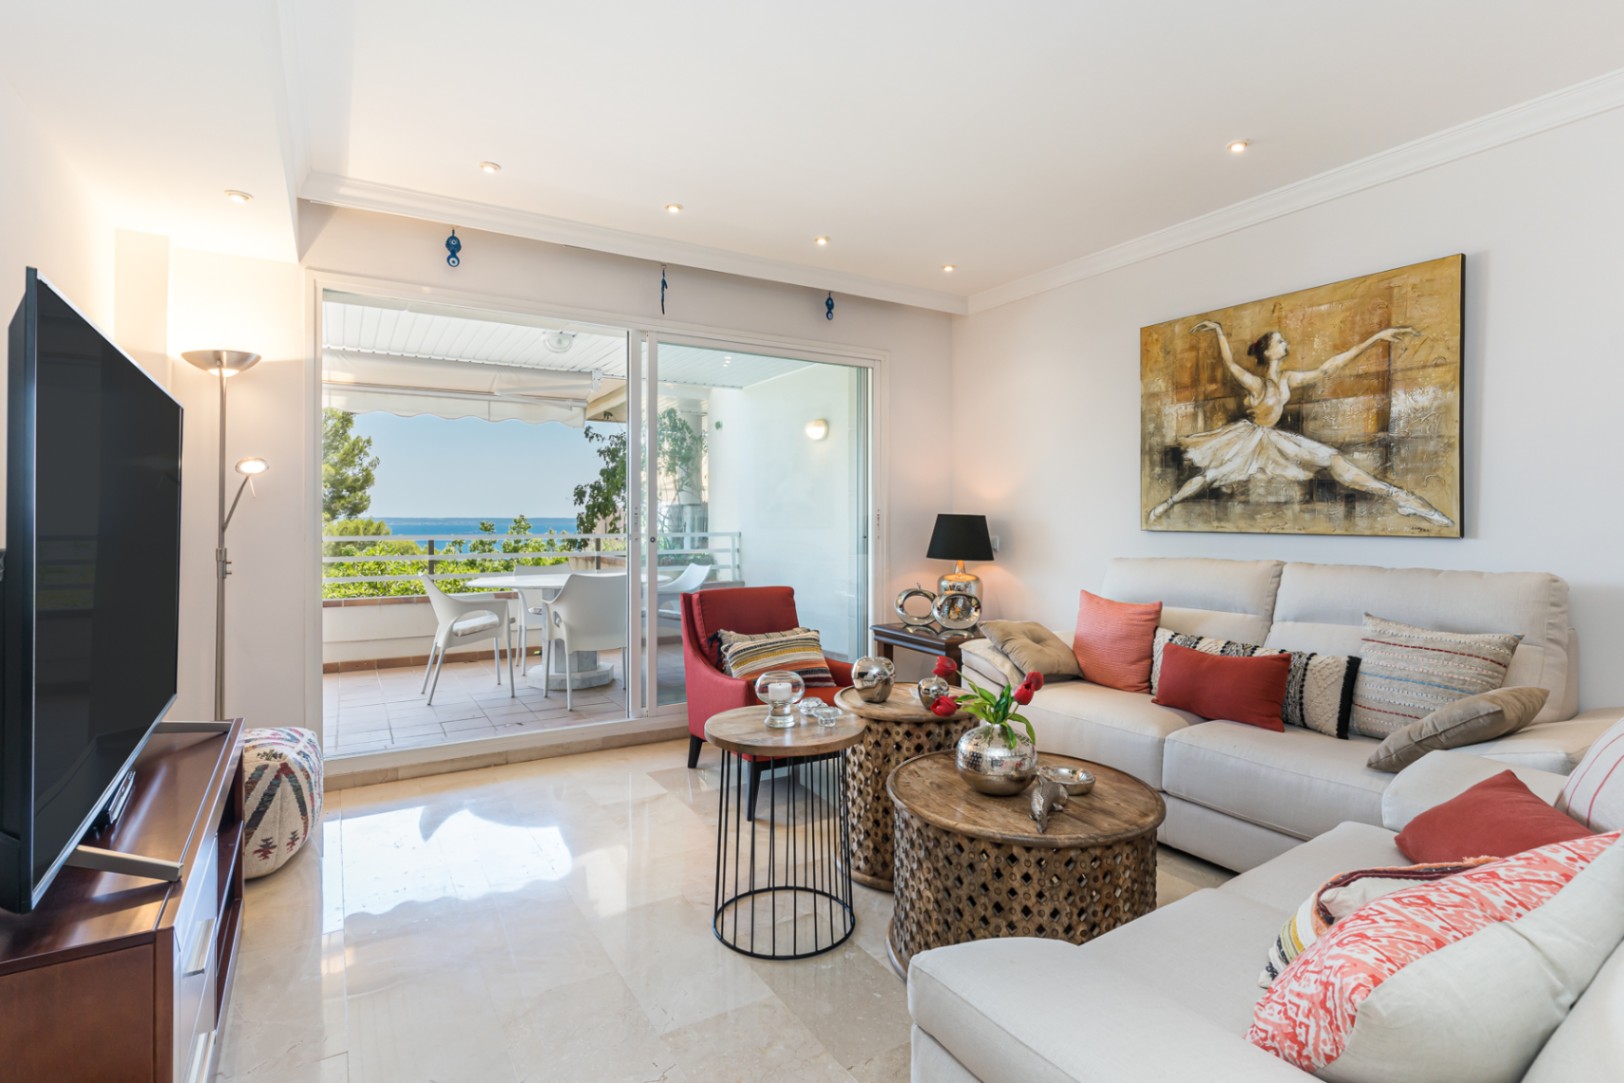 Schöne Wohnung mit Meerblick in ruhiger Gegend von Cas Catala